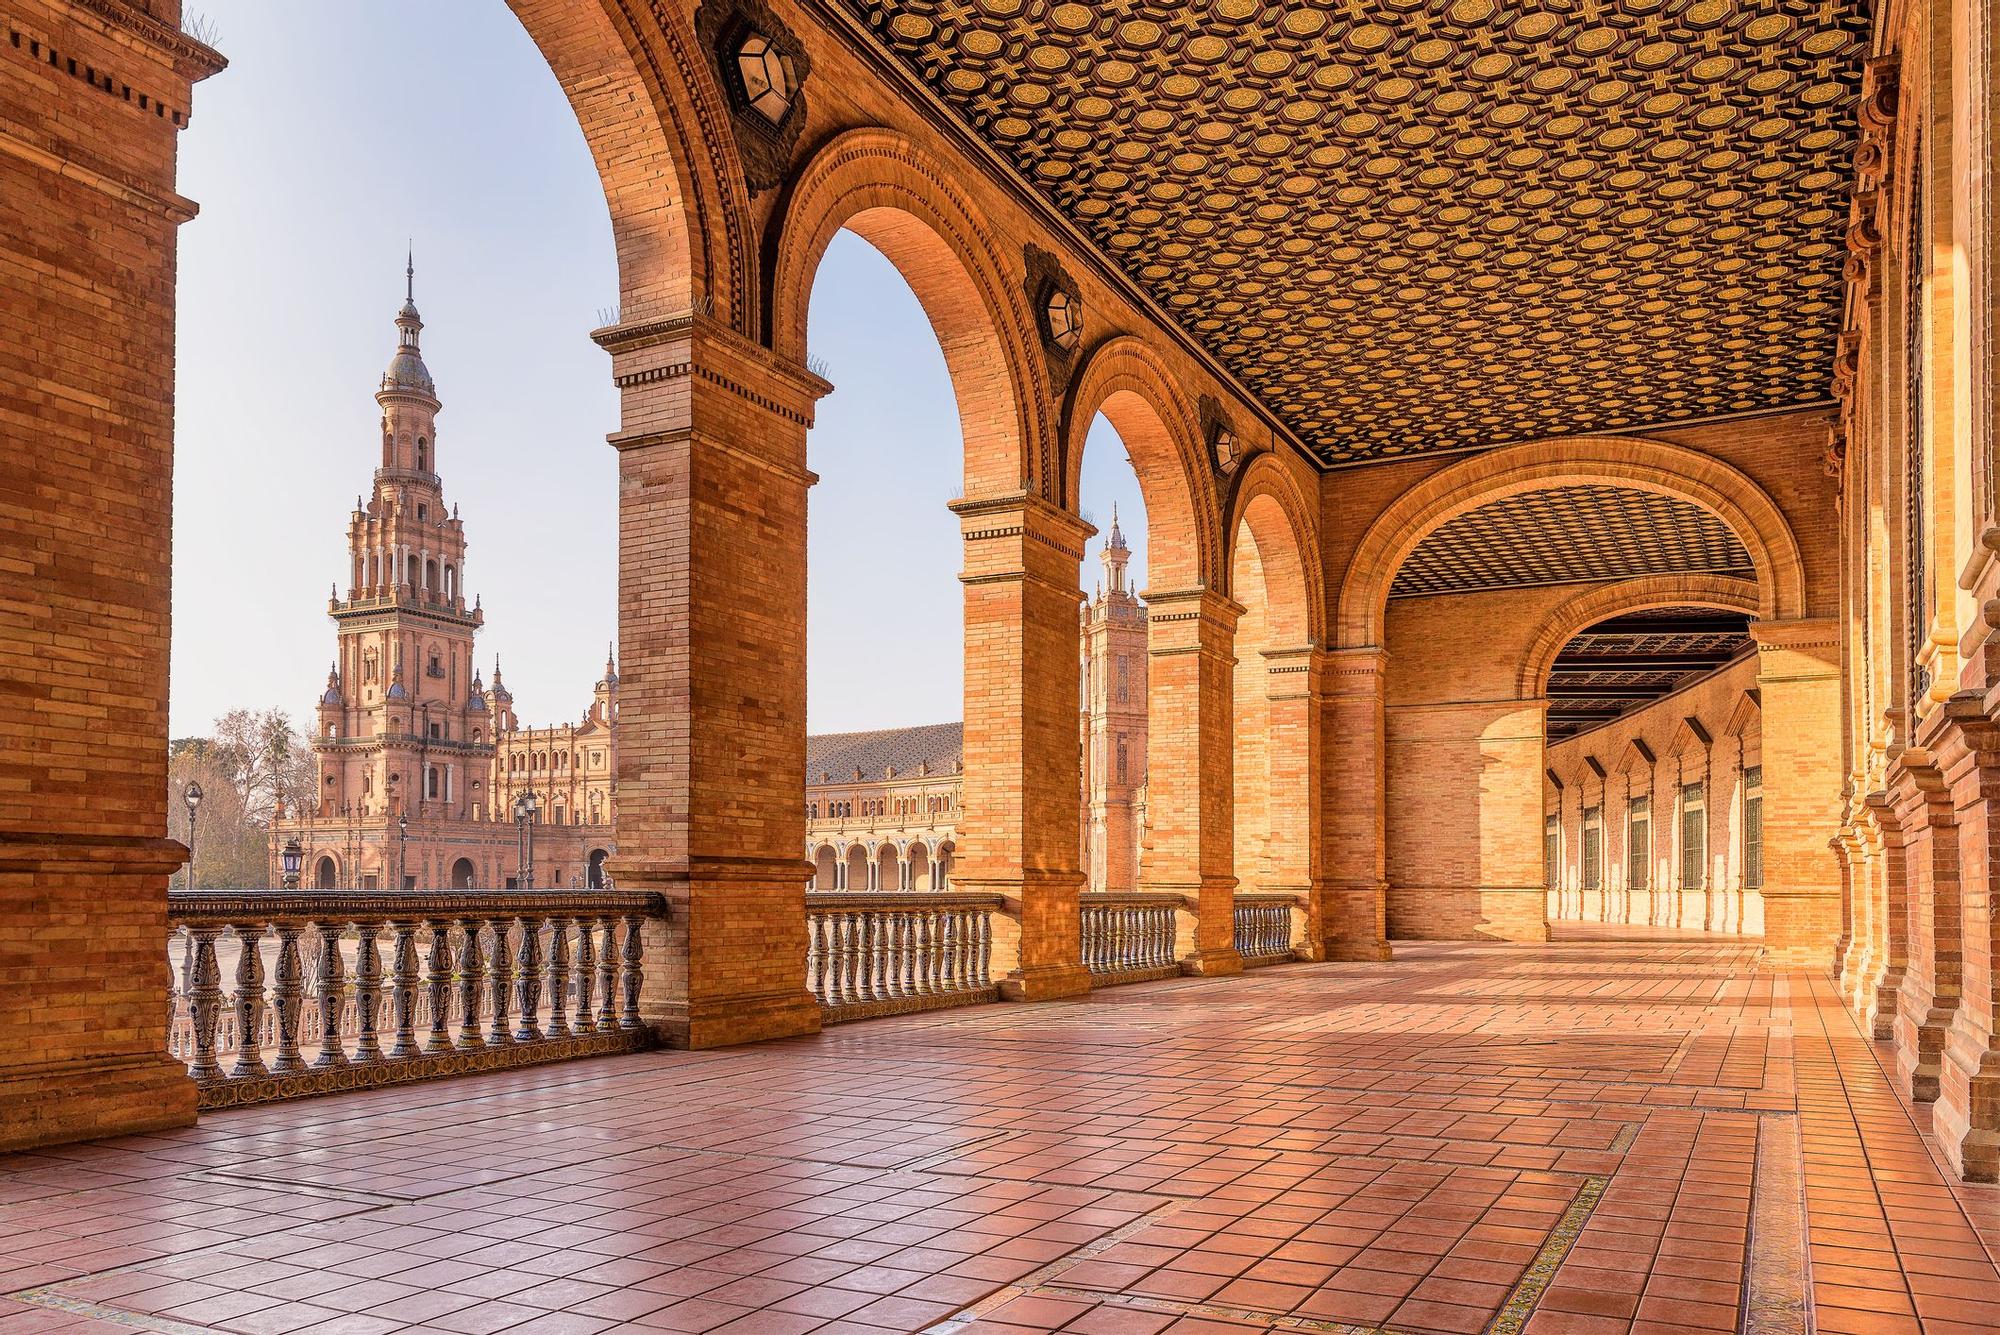 La Plaza de España, en Sevilla, es el lugar elegido para representar la ciudad de Theed en el planeta Naboo de Star Wars